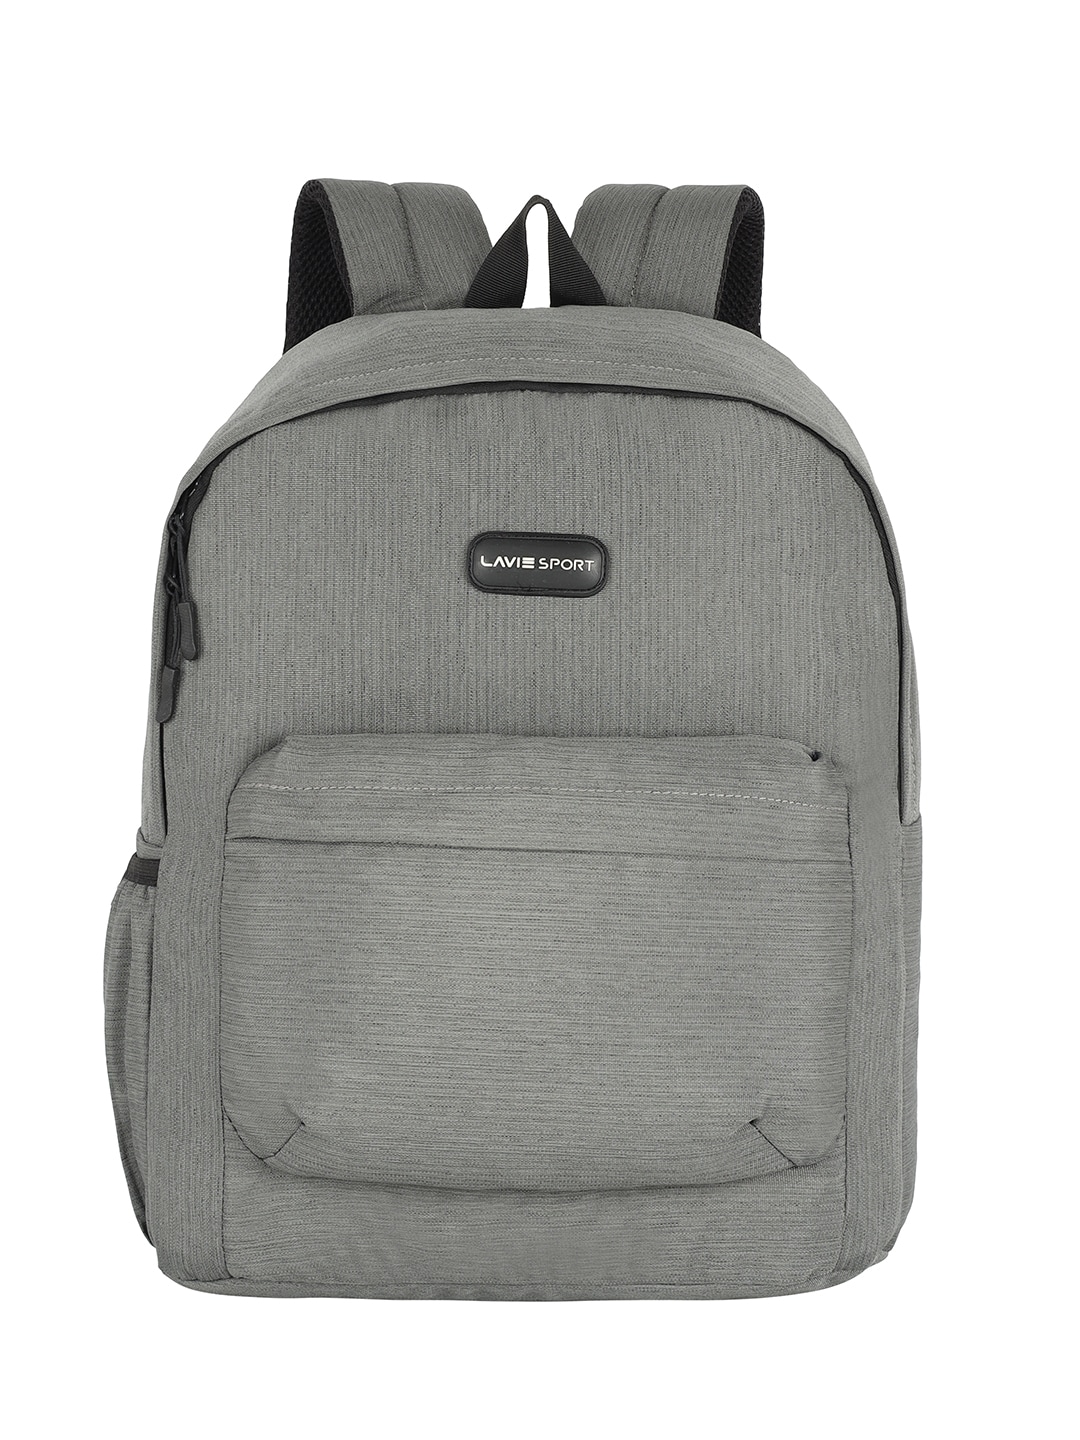 LAVIE SPORT Unisex Kids Brand Logo Backpack